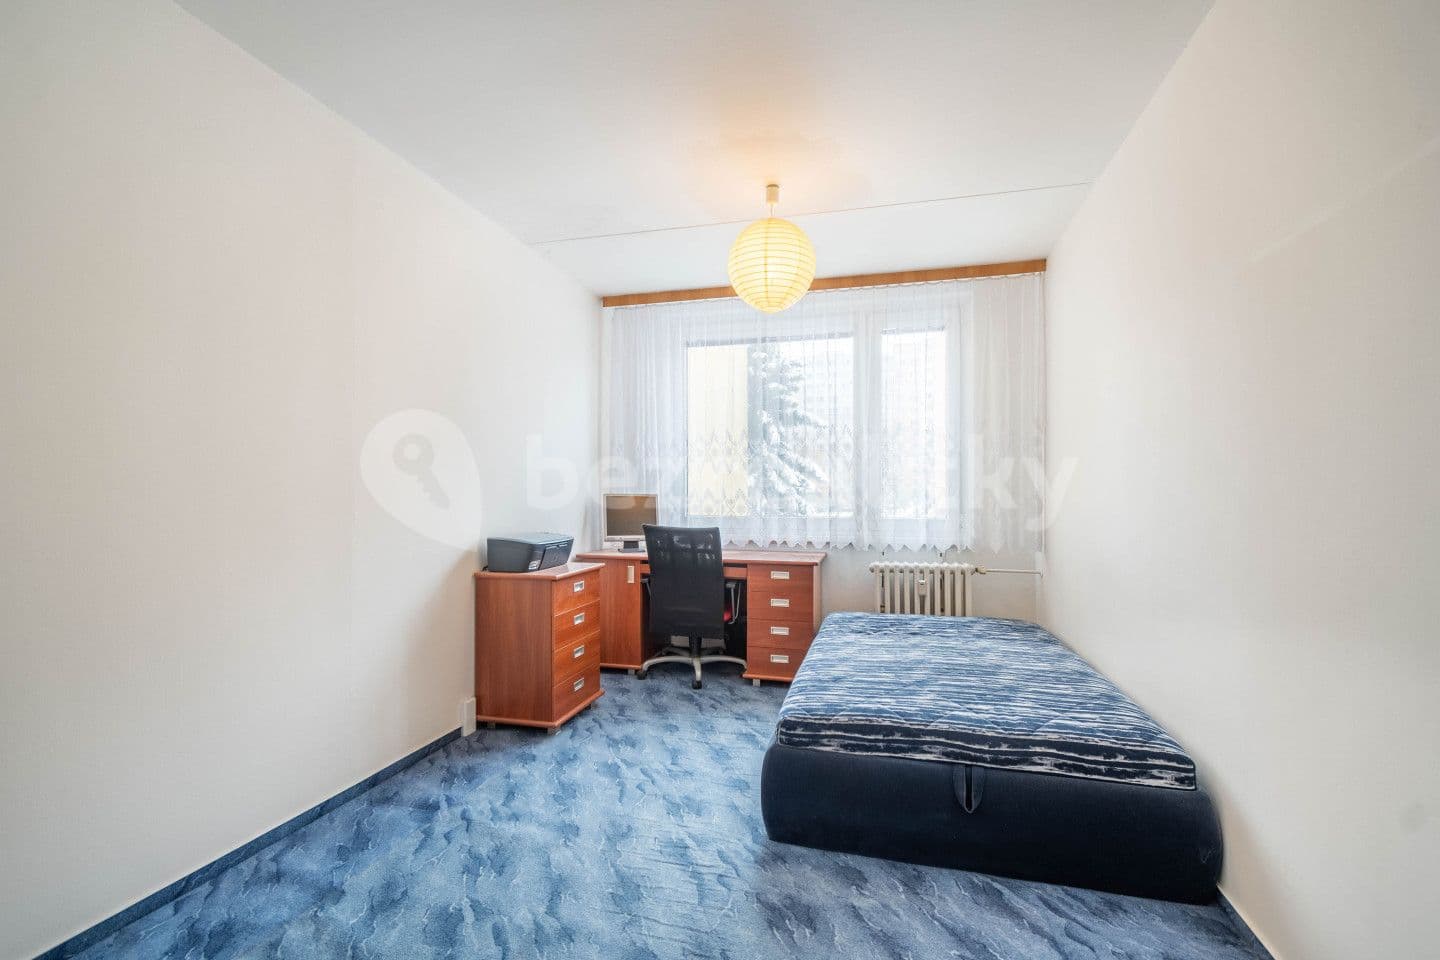 3 bedroom flat for sale, 70 m², Ciolkovského, Prague, Prague